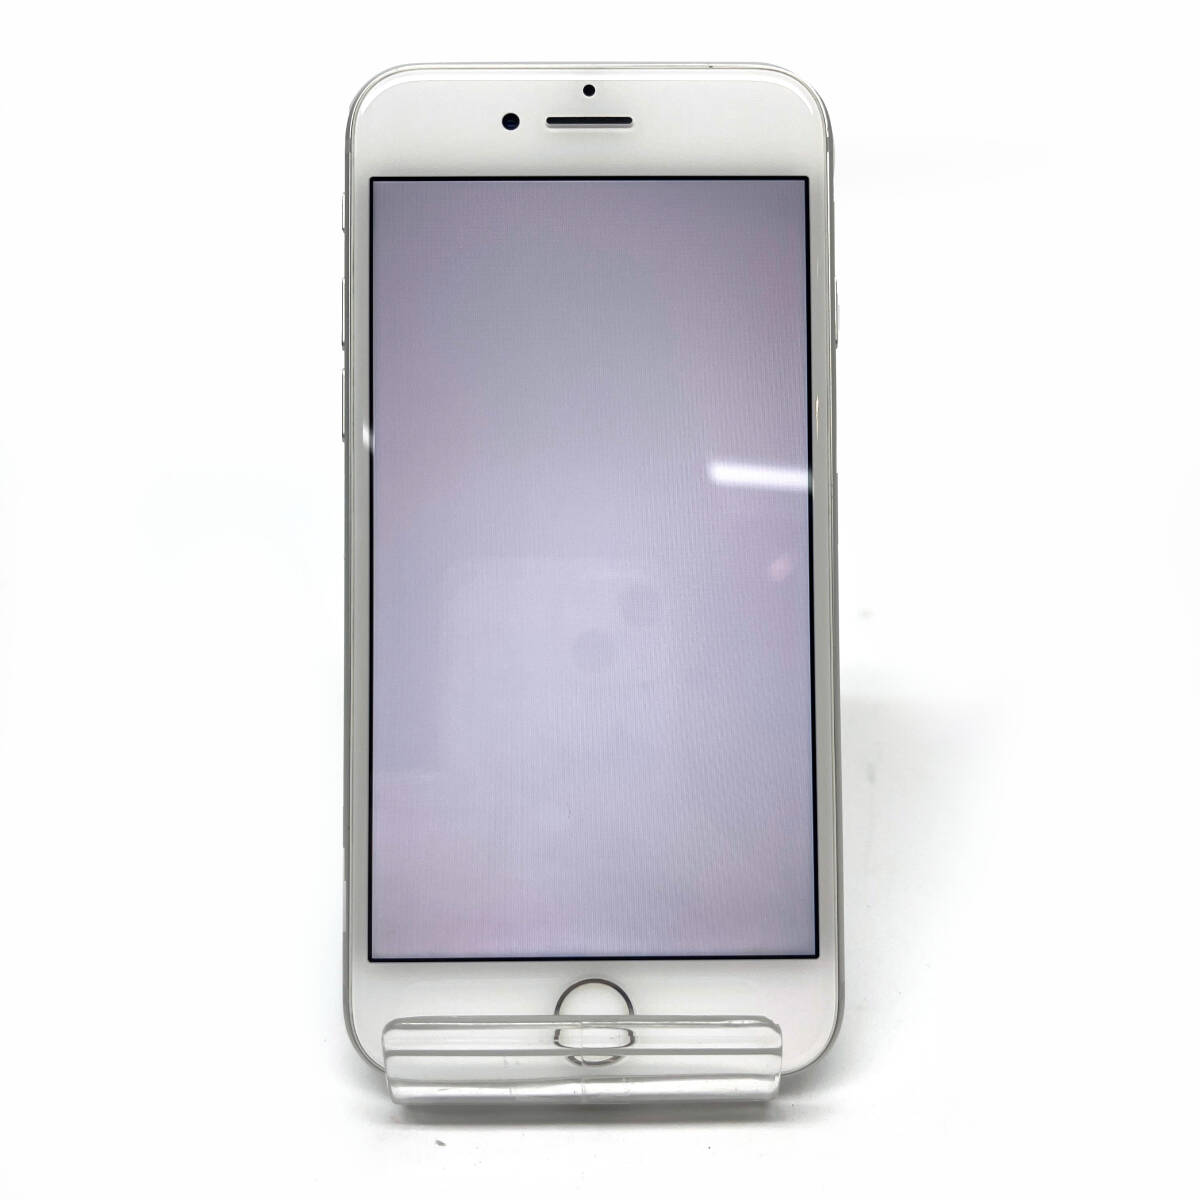 tu111 Apple iPhone8 64GB MQ792J/A   серебристый   батарея  ... большое содержимое  ：78％  использование   предел 0 SIM рок  нет  ※ подержанный товар / трудности  есть / батарея   ухудшение [качества]  